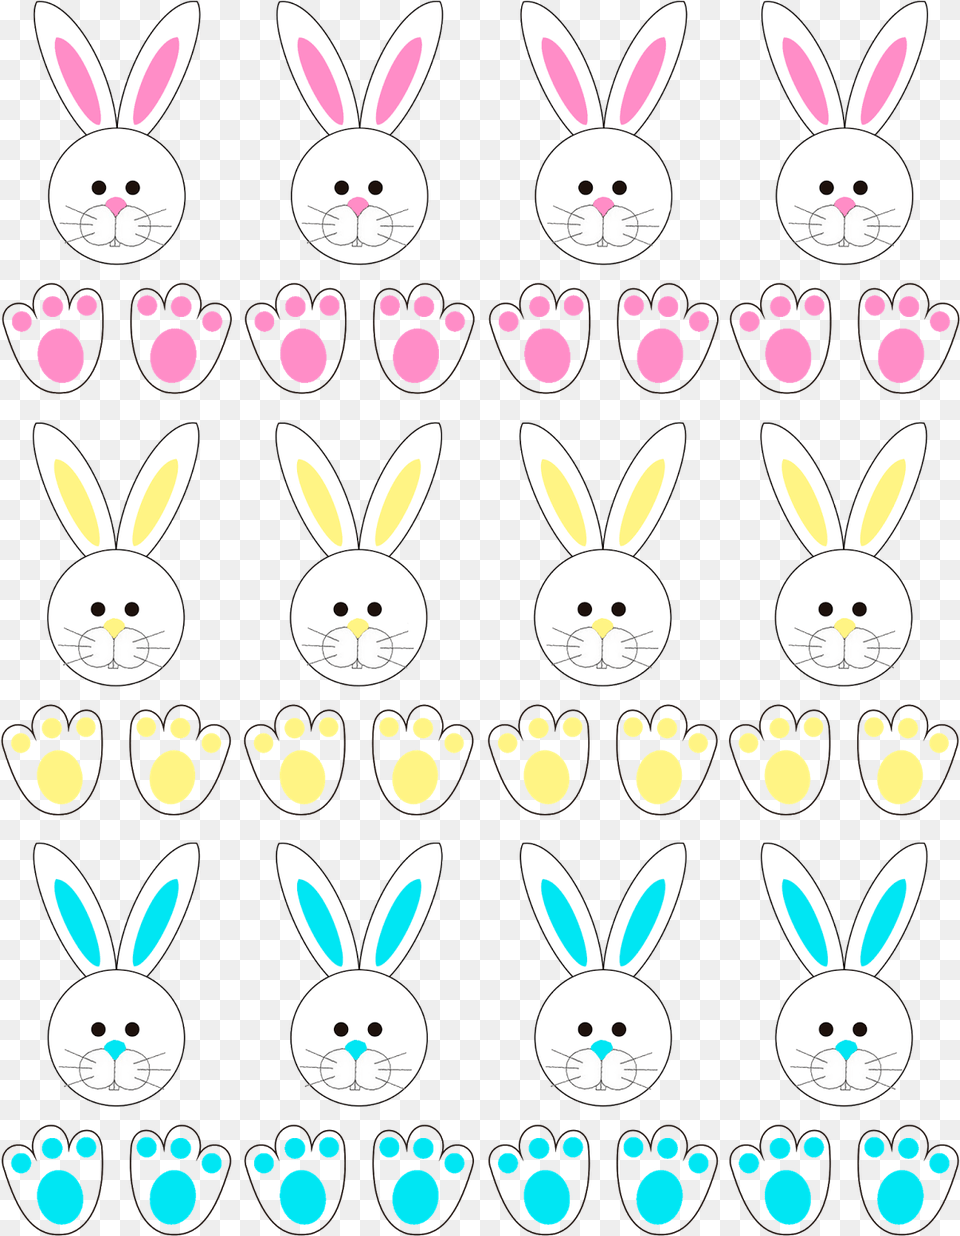 Coelho De Pscoa De Alpino Domestic Rabbit, Pattern Free Transparent Png